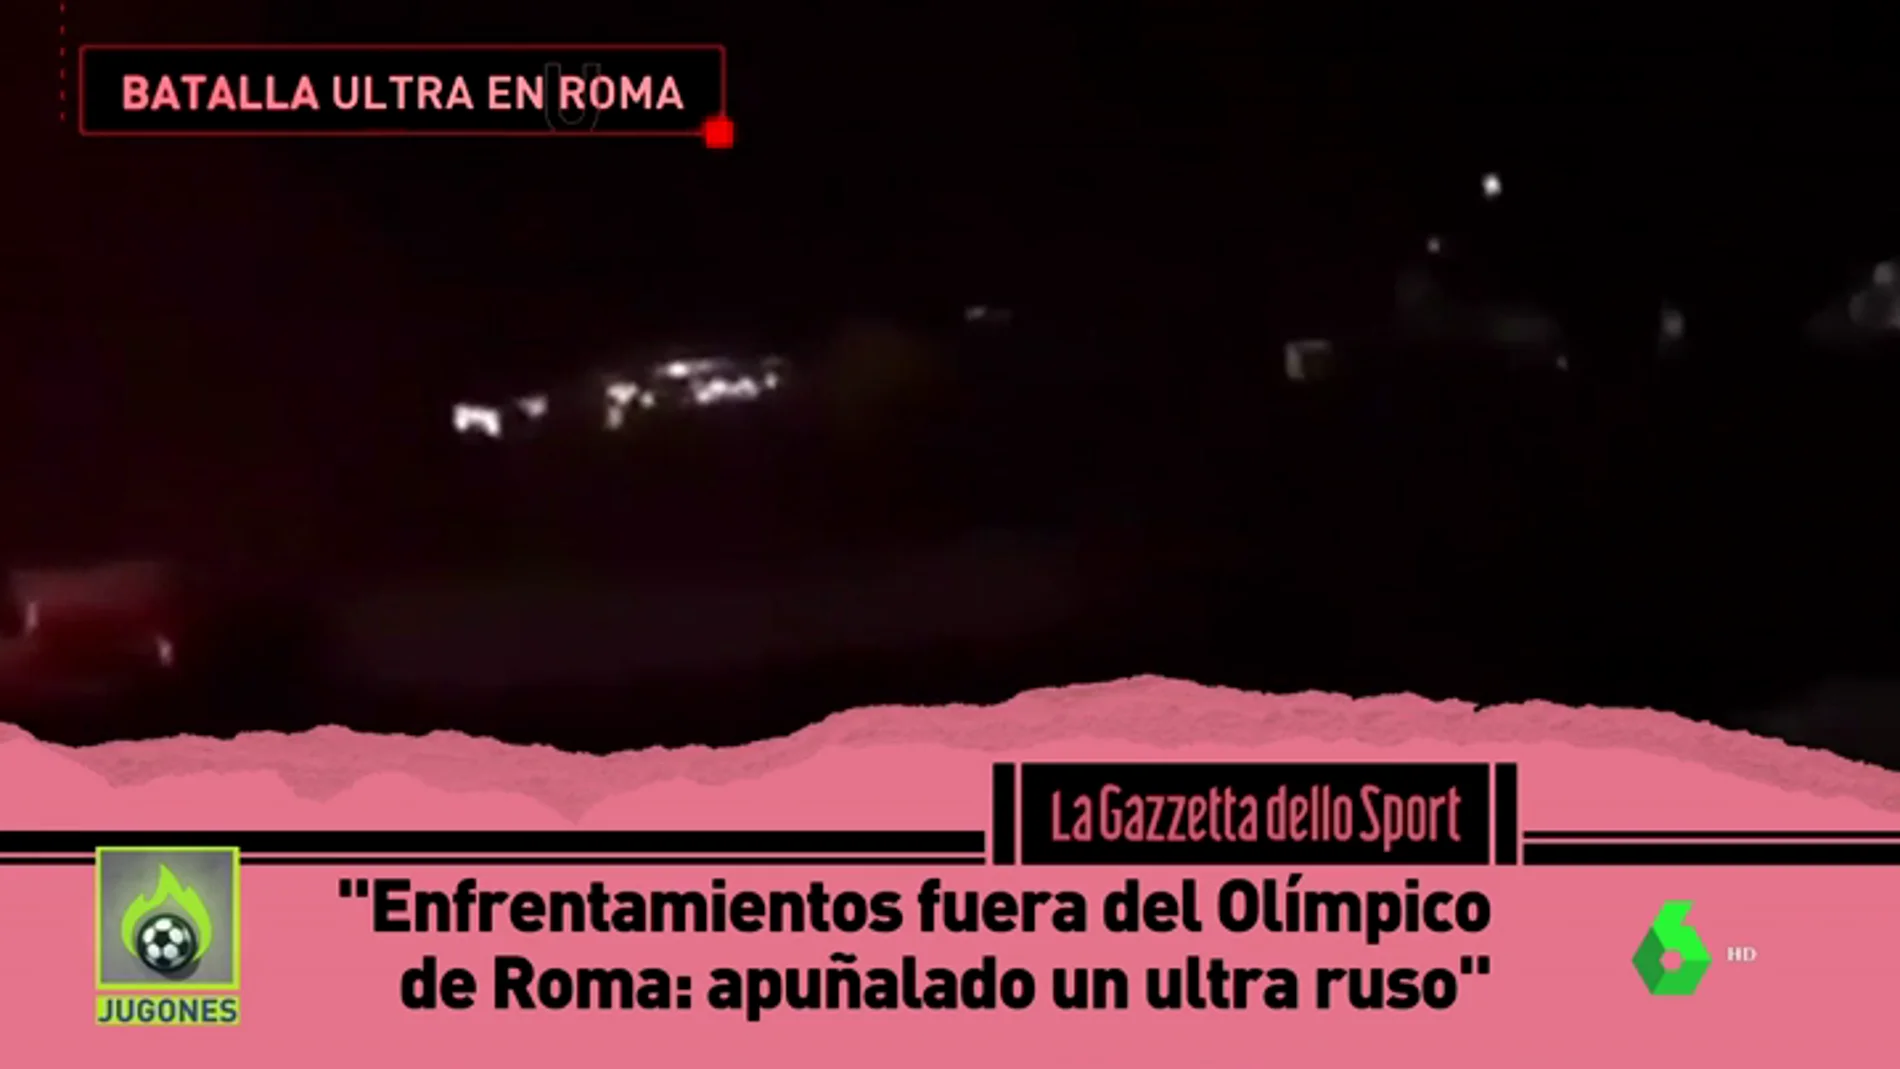 Así fue la batalla entre ultras de la Roma y el CSKA en los exteriores del Olímpico con un ultra ruso apuñalado